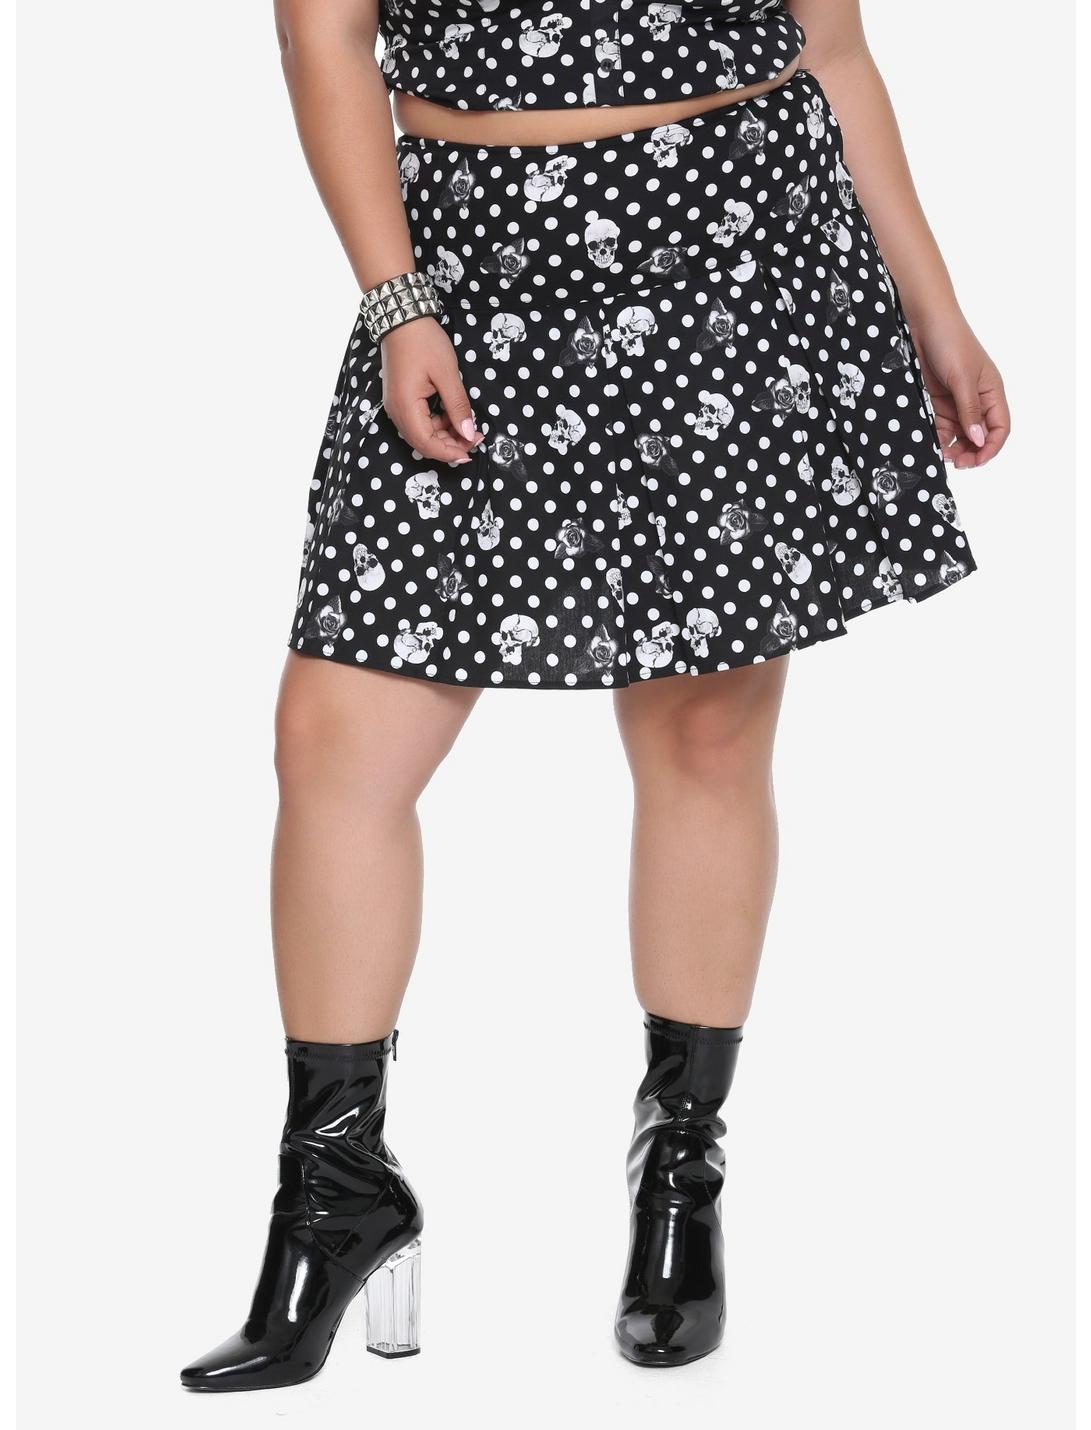 Black & White Polka Dot Skull & Rose Skirt Plus Size, BLACK, hi-res